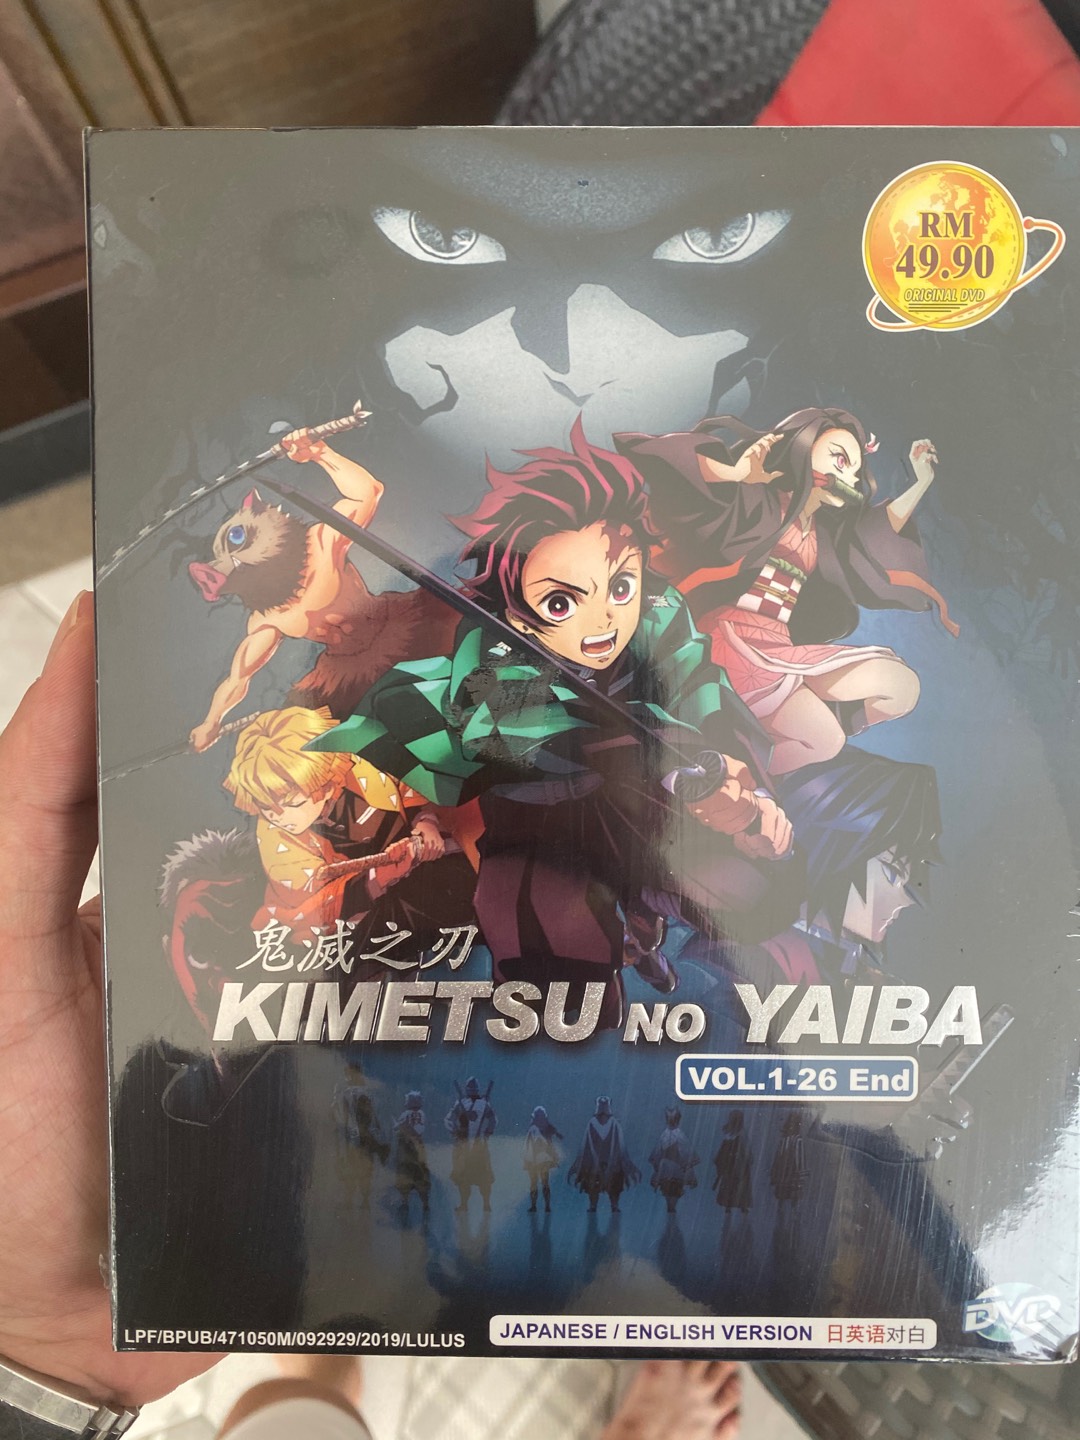 Anime Dvd Demon Slayer Kimetsu No Yaiba Vol 1 26 End Shopee Malaysia